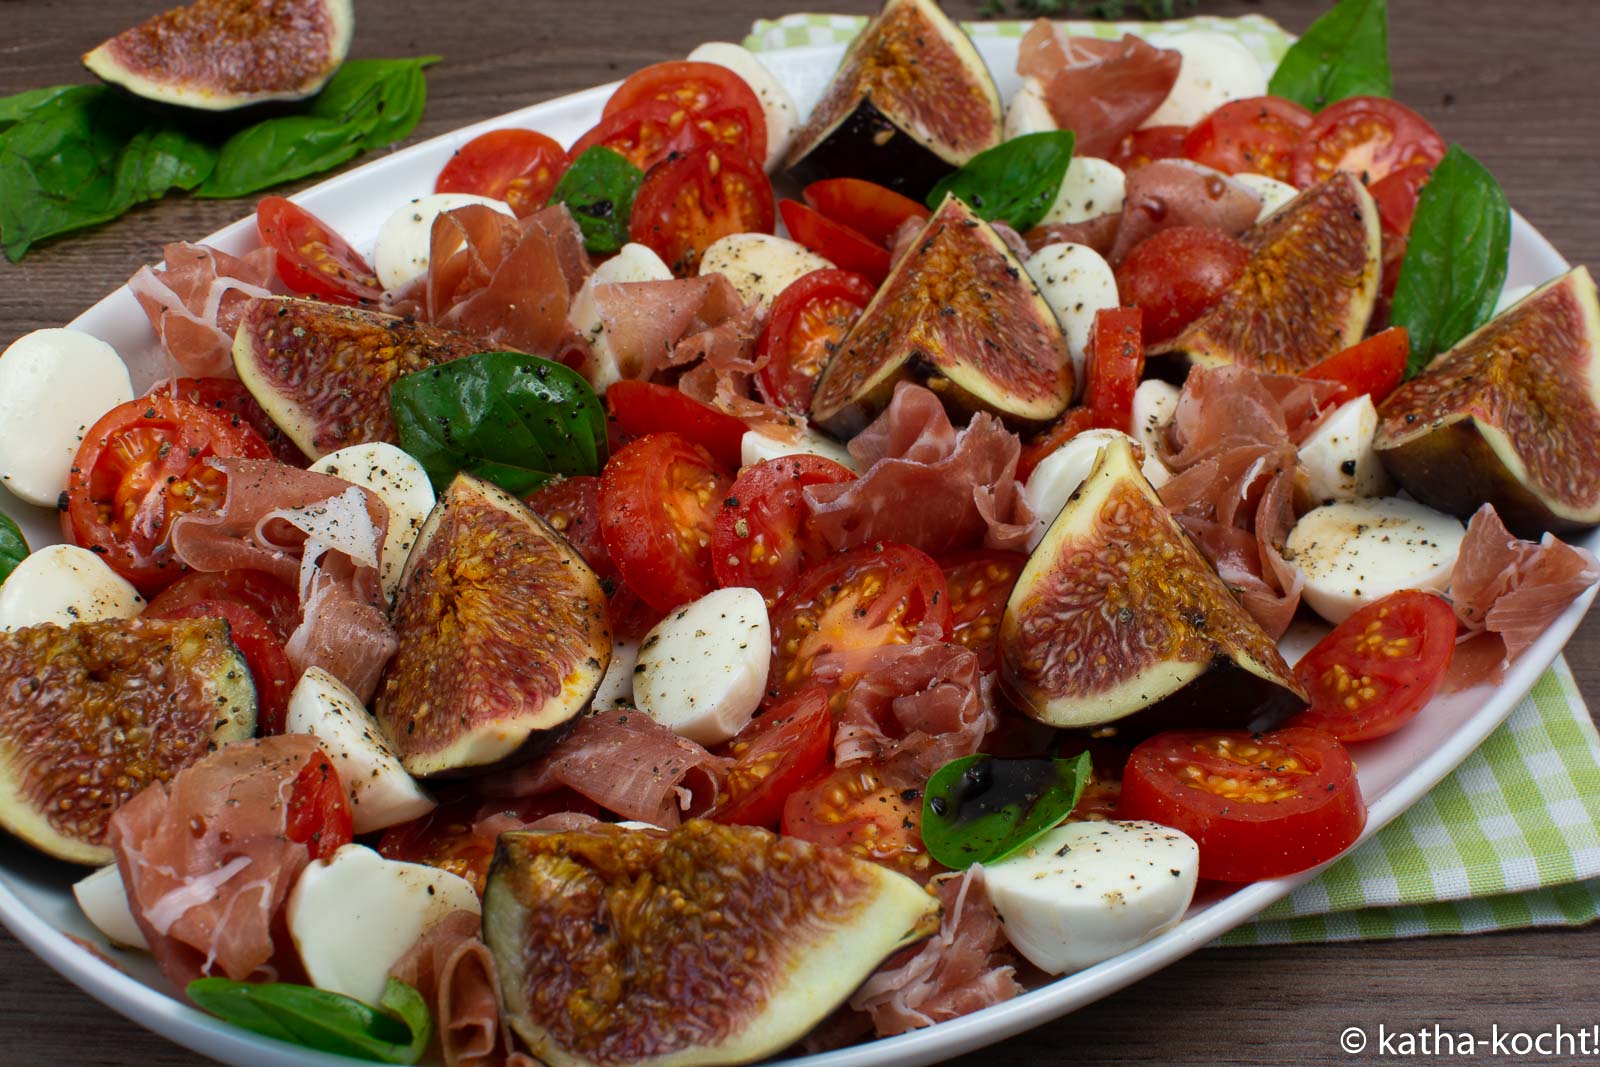 Tomate-Mozzarella Salat mit Feigen und Serrano Schinken - Katha-kocht!